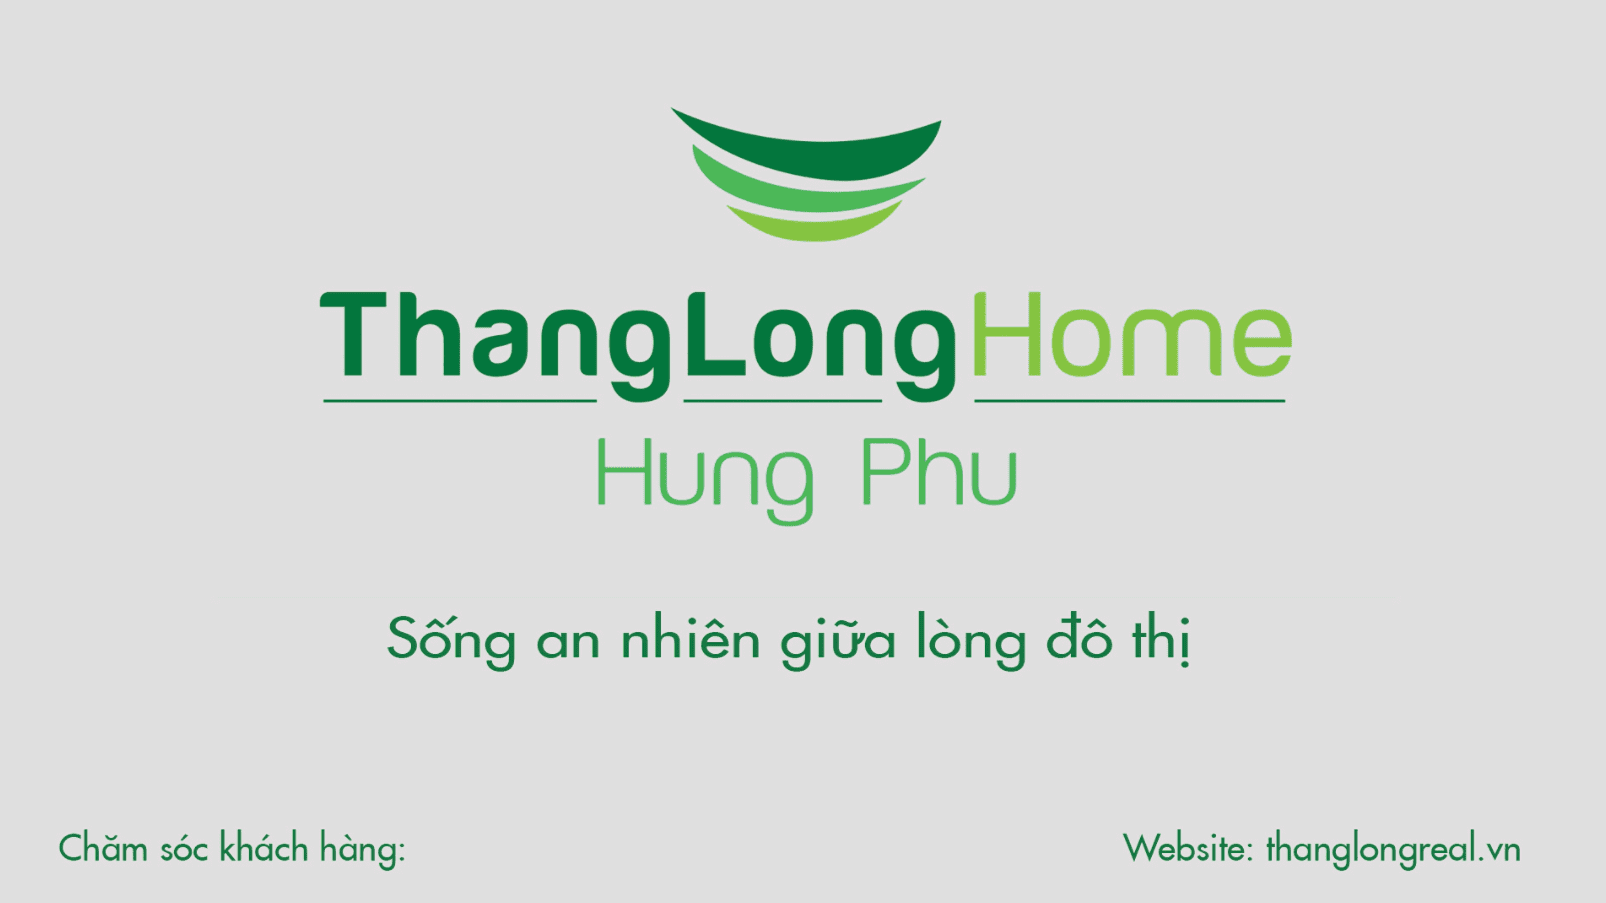 Dự án Thang Long Home-Hưng Phú